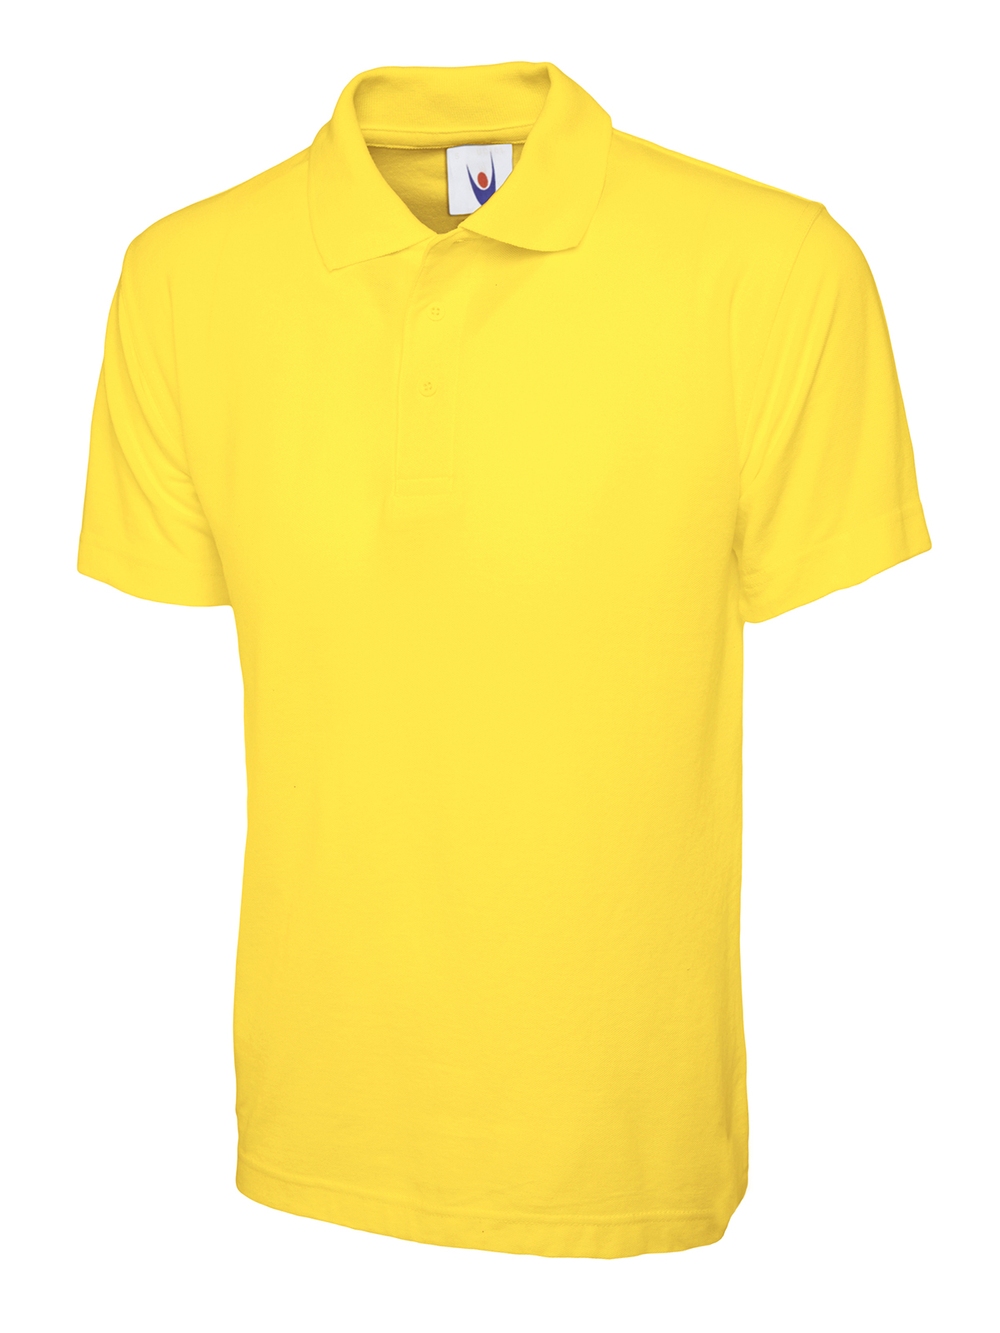 Yellowpoloshirt